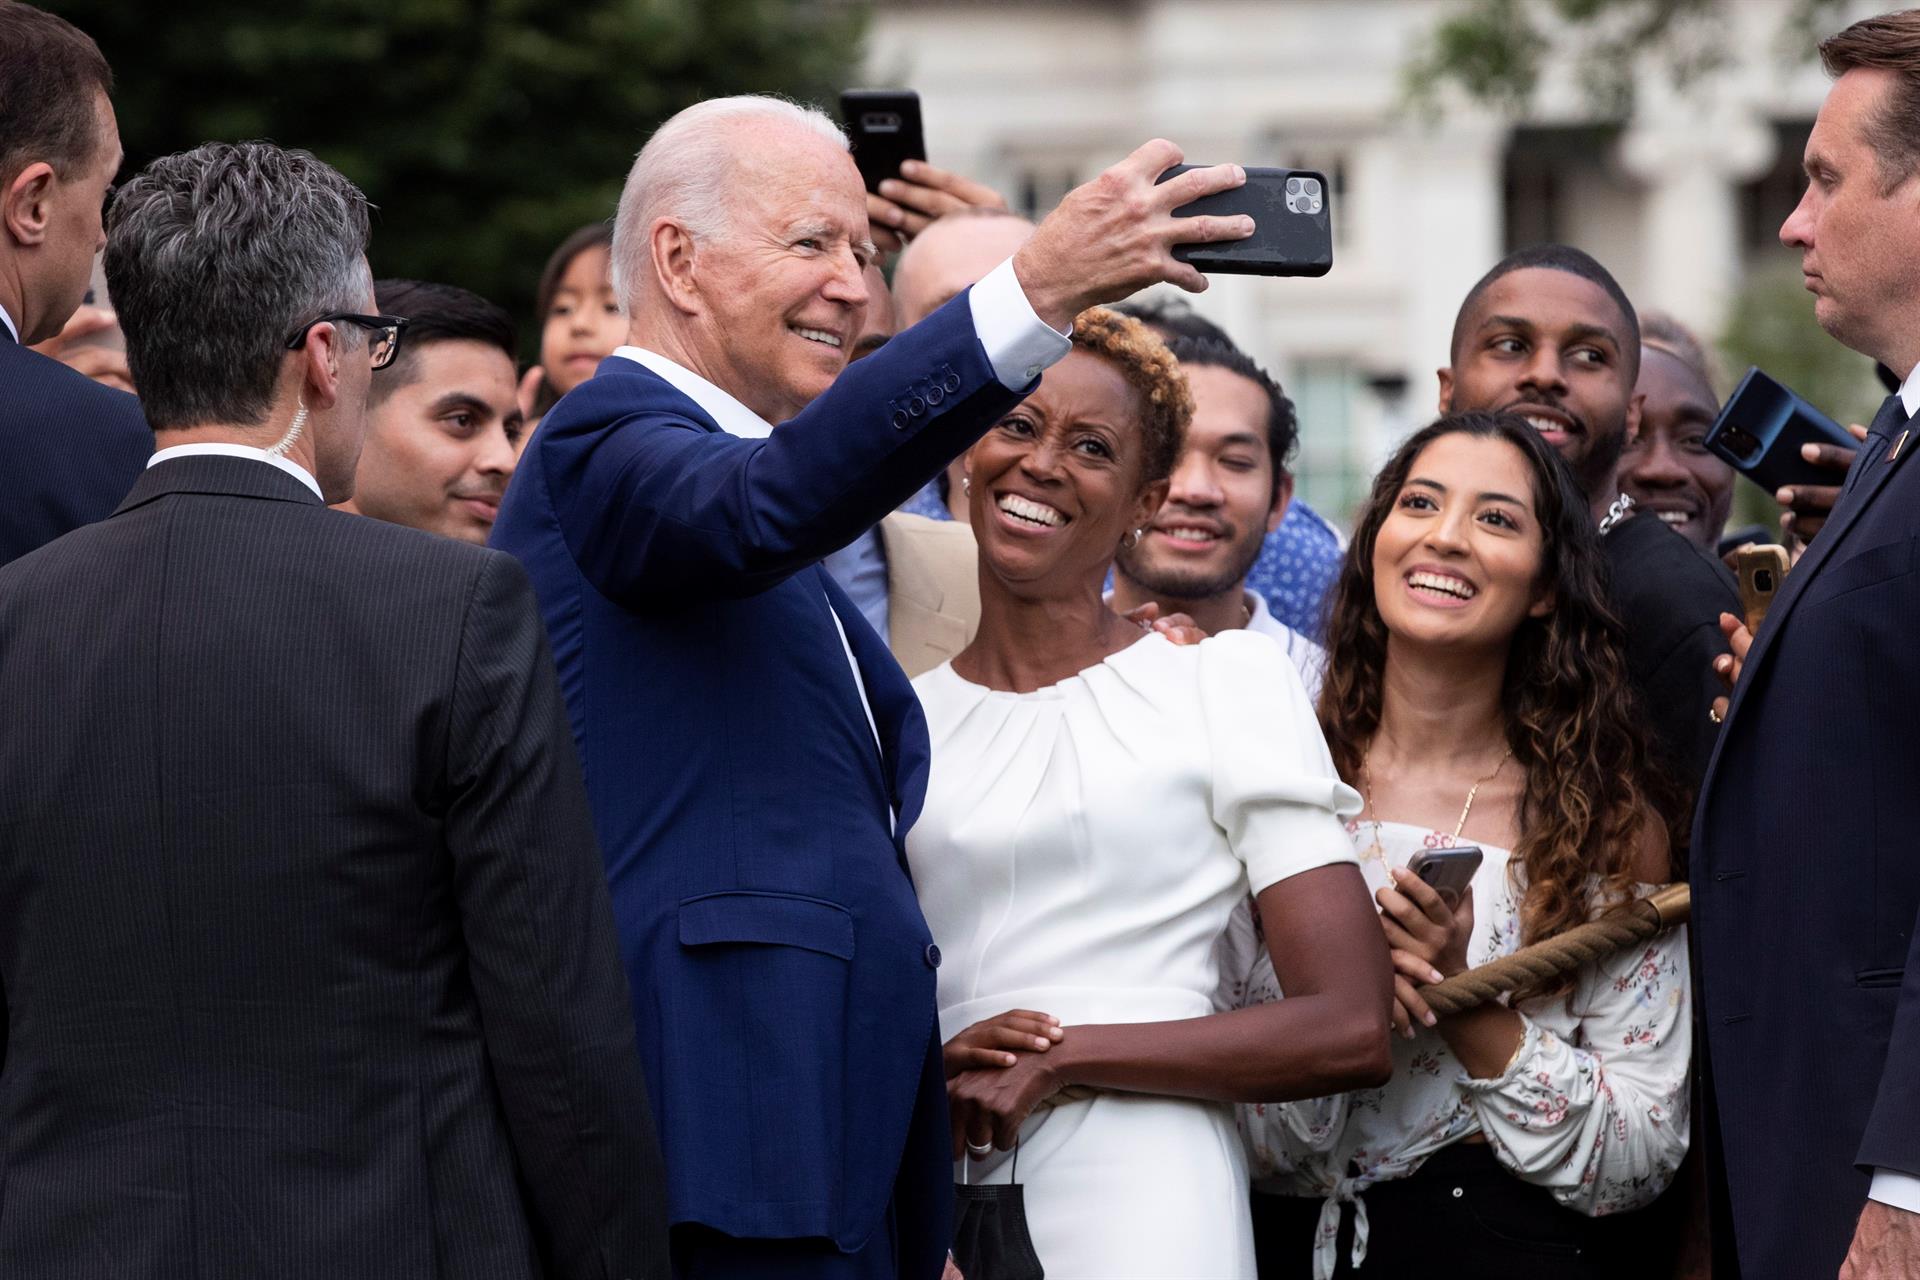 El presidente Joe Biden se toma una foto junto a un grupo de personas tras el evento el La Casa Blanca.